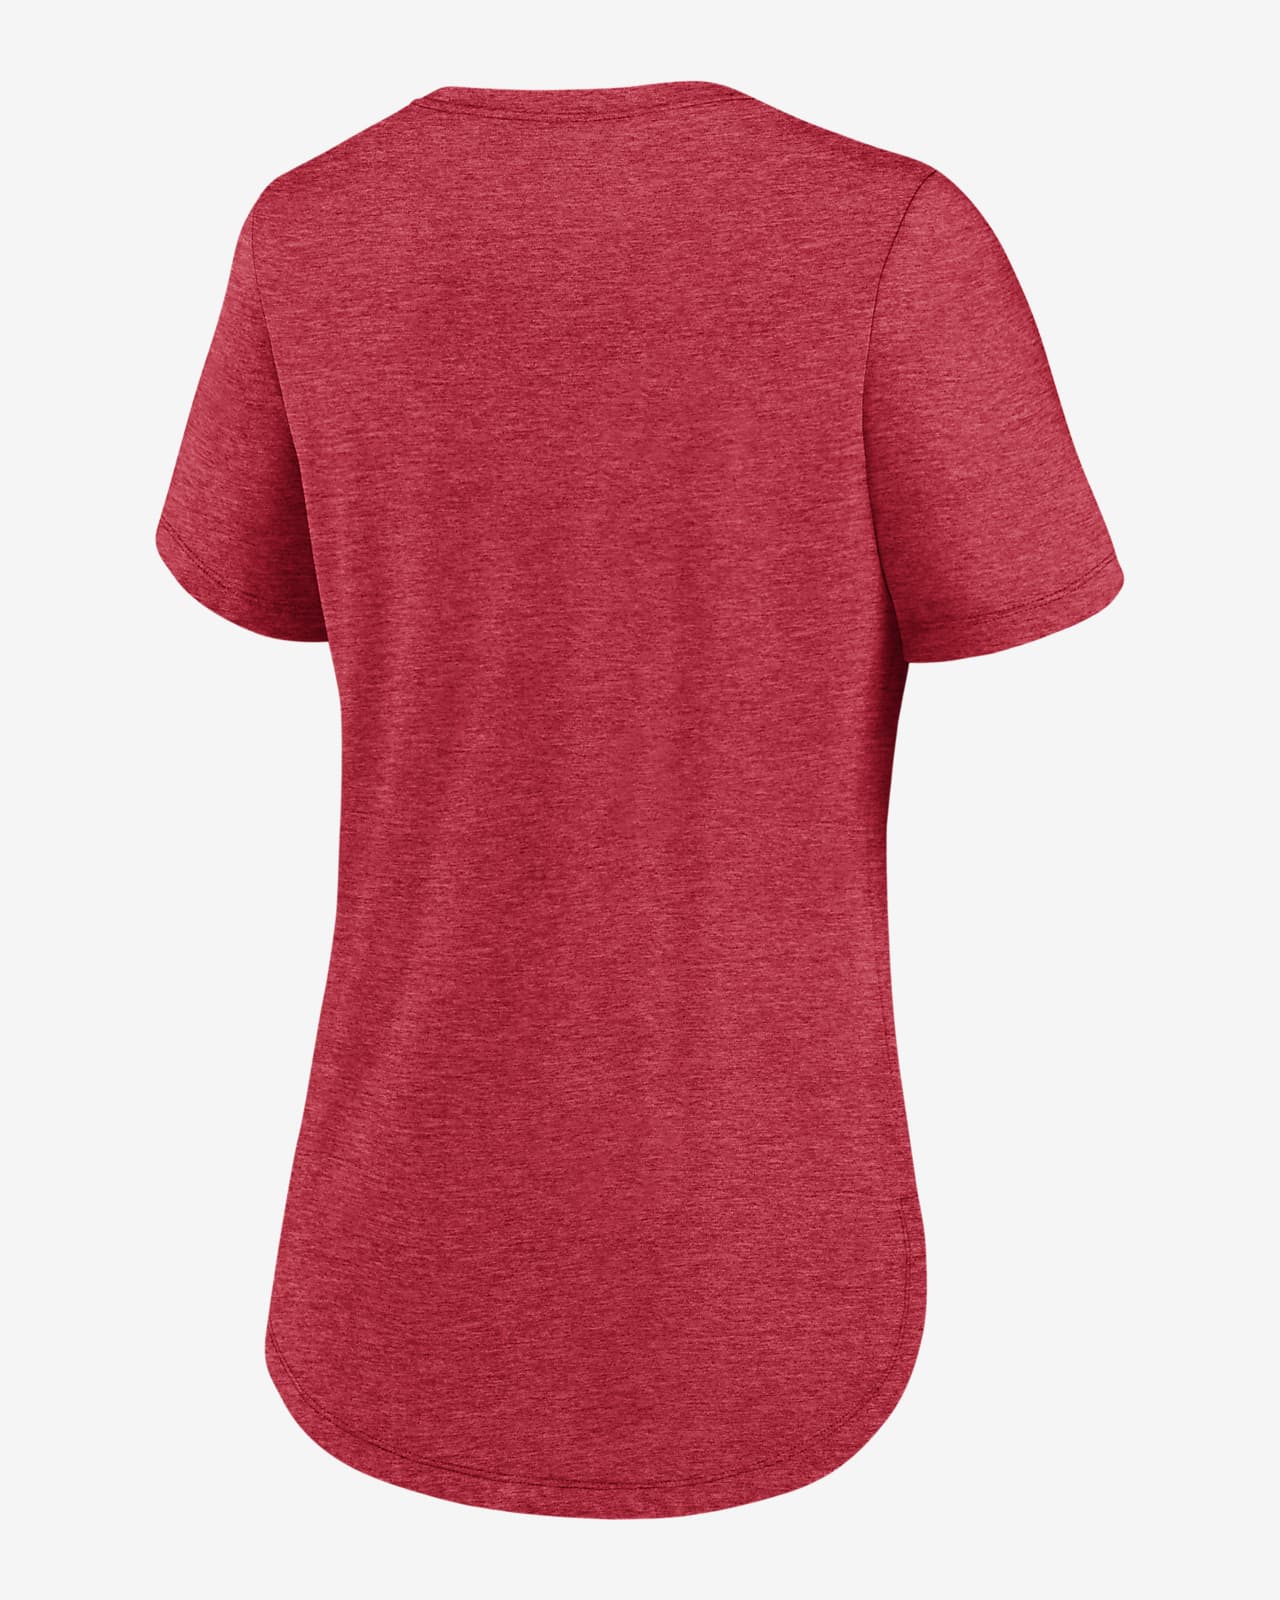 cincinnati reds womens shirt